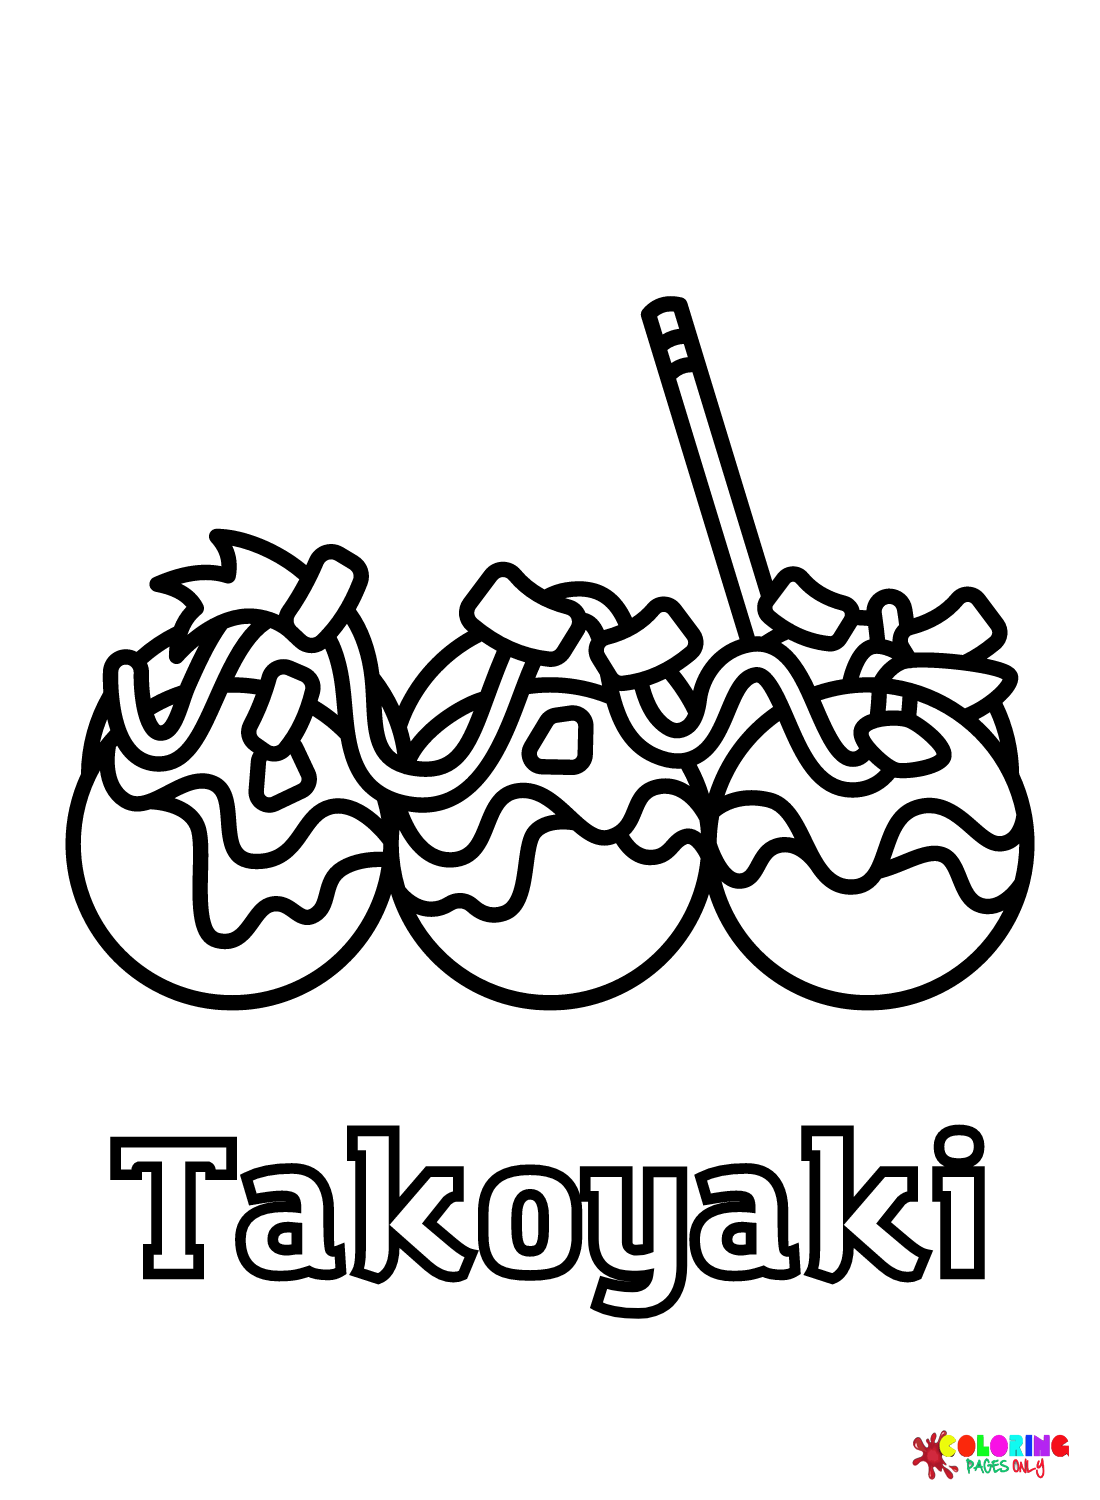 Takoyaki gratuito da Takoyaki